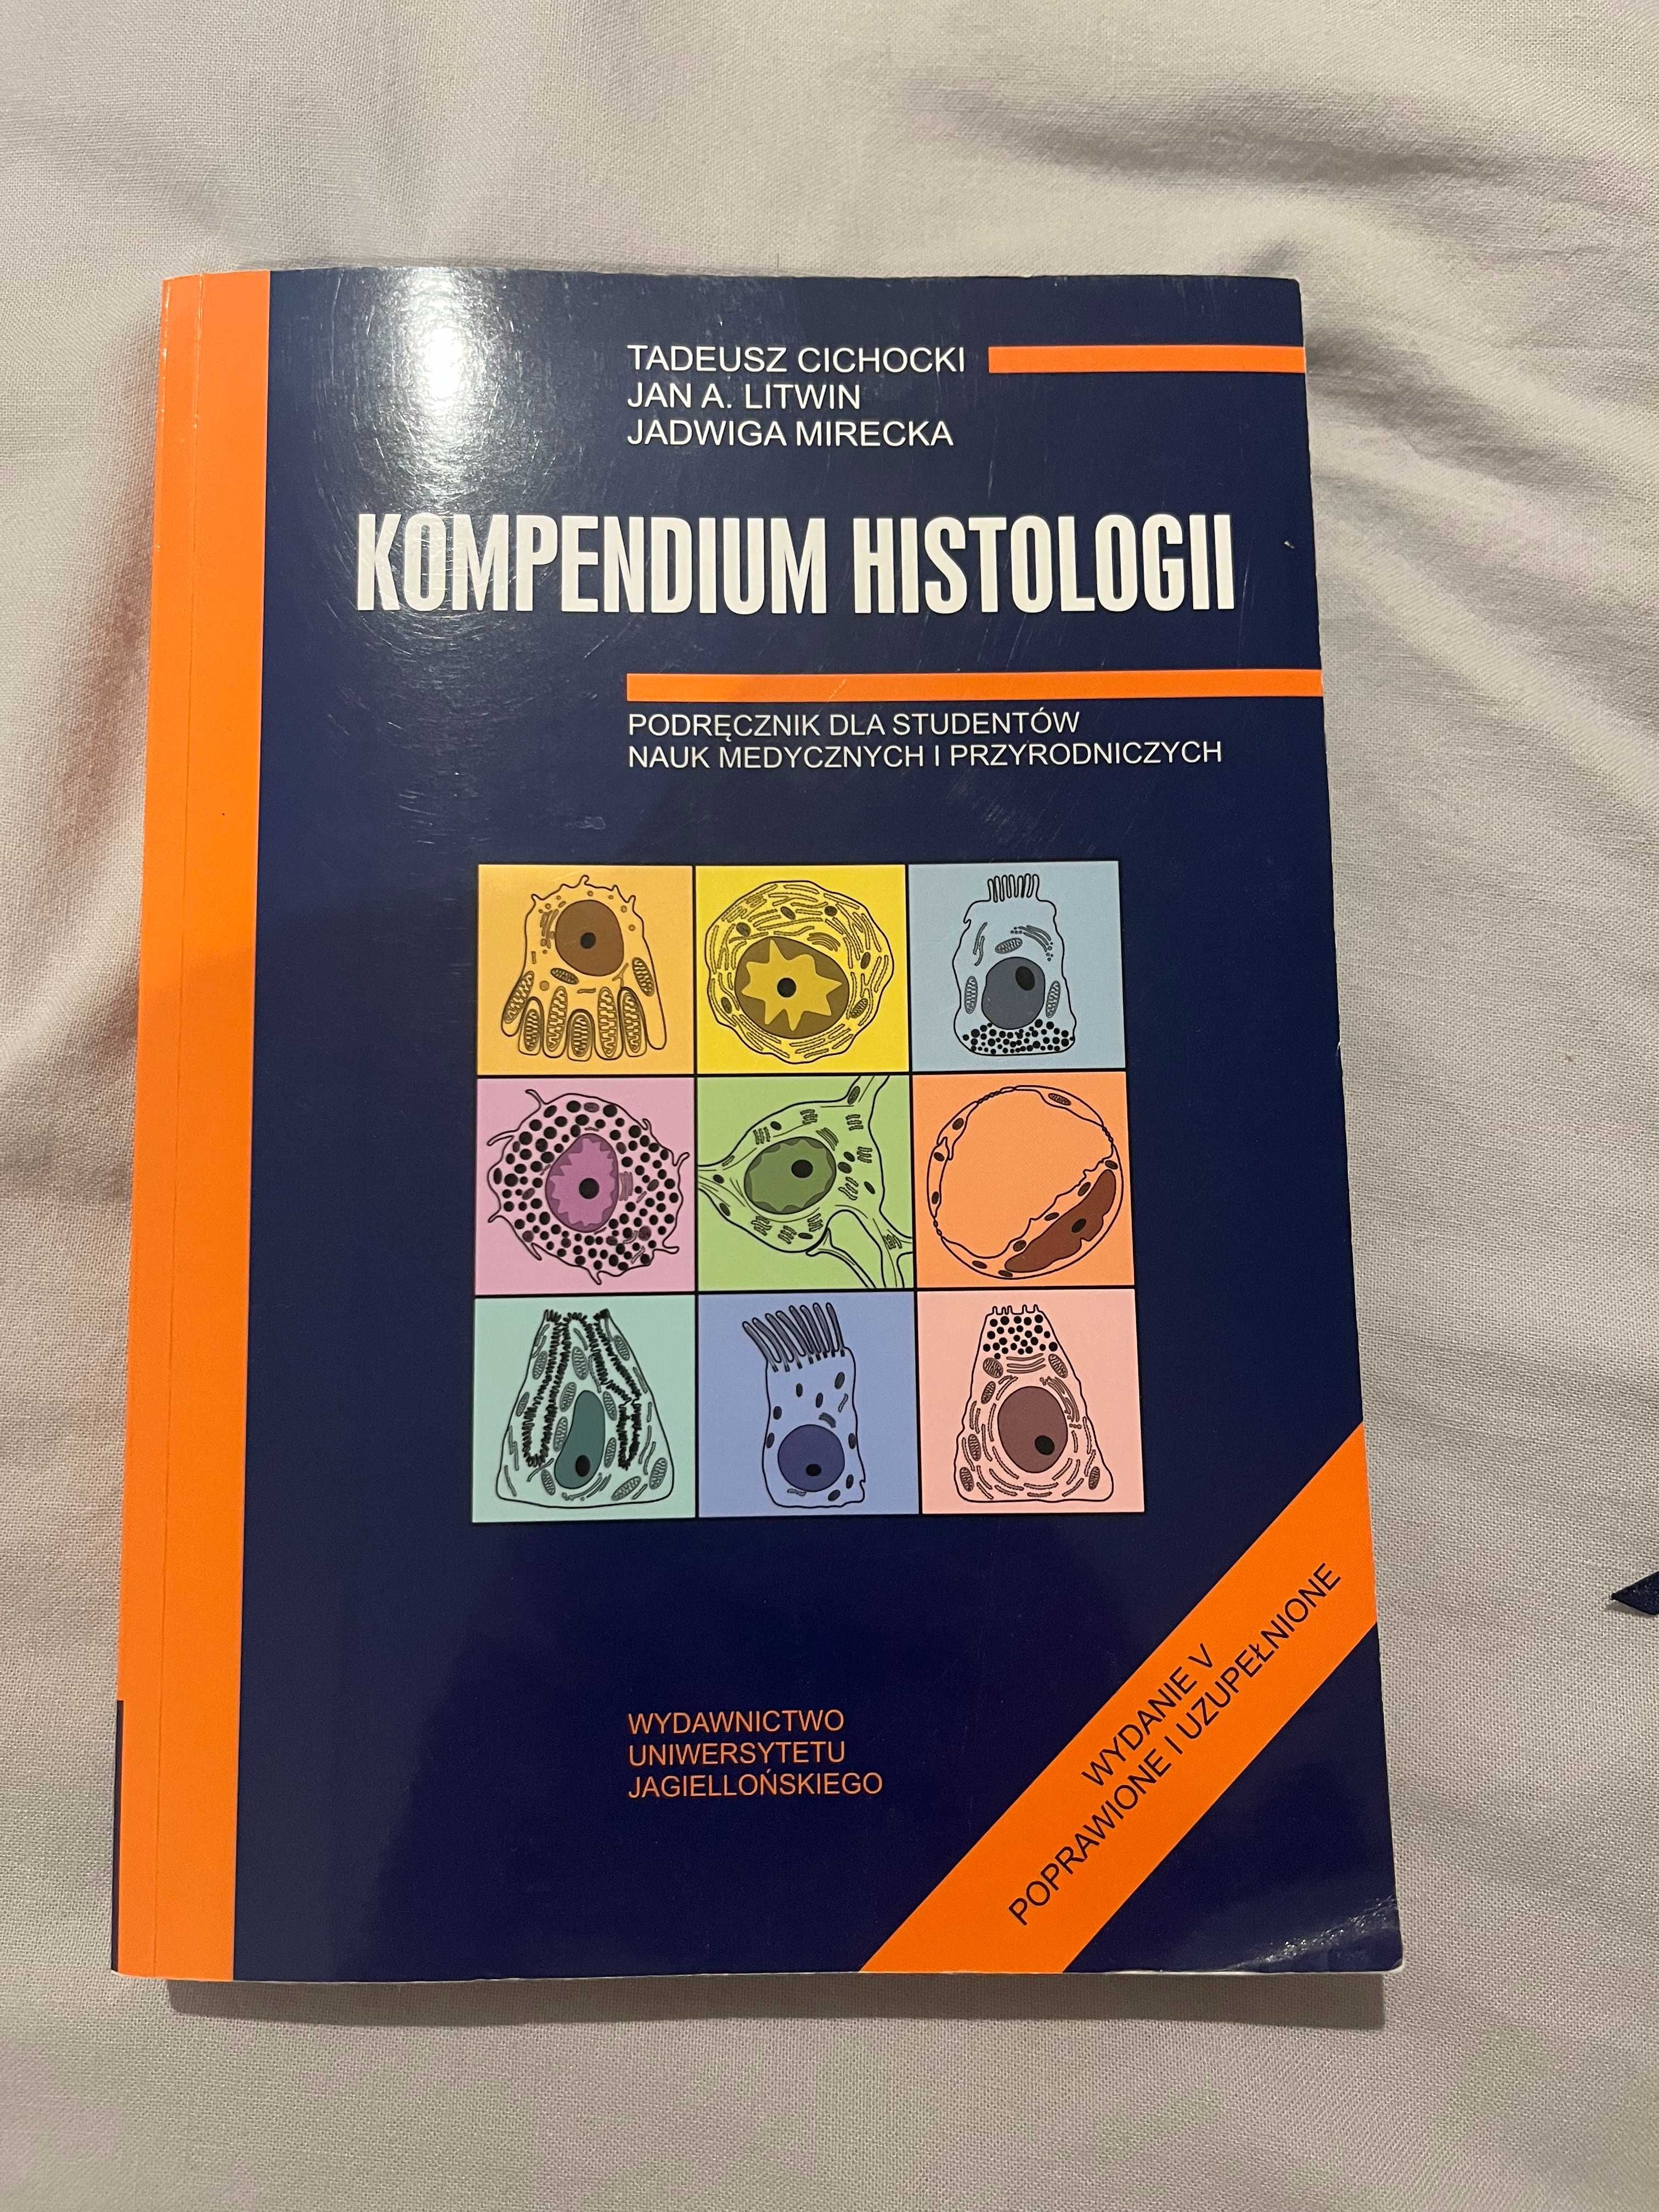 Kompendium Histologii Cichockiego